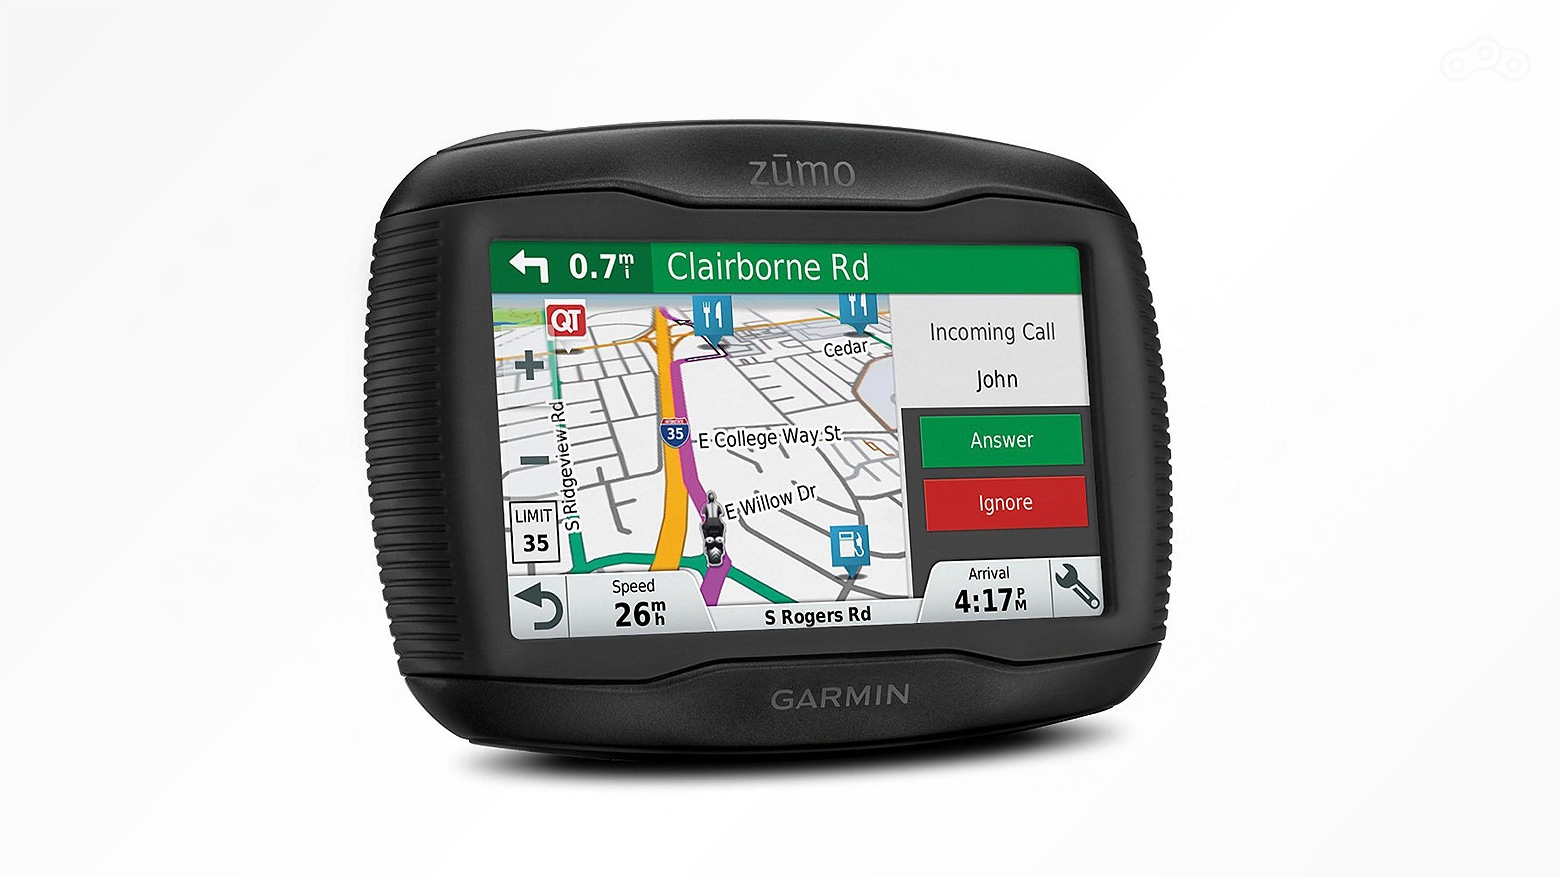 Навигатор Garmin Zumo 395 проведёт вас по живописным дорогам, сообщит об упавшем давлении в шинах и найдёт место отдыха